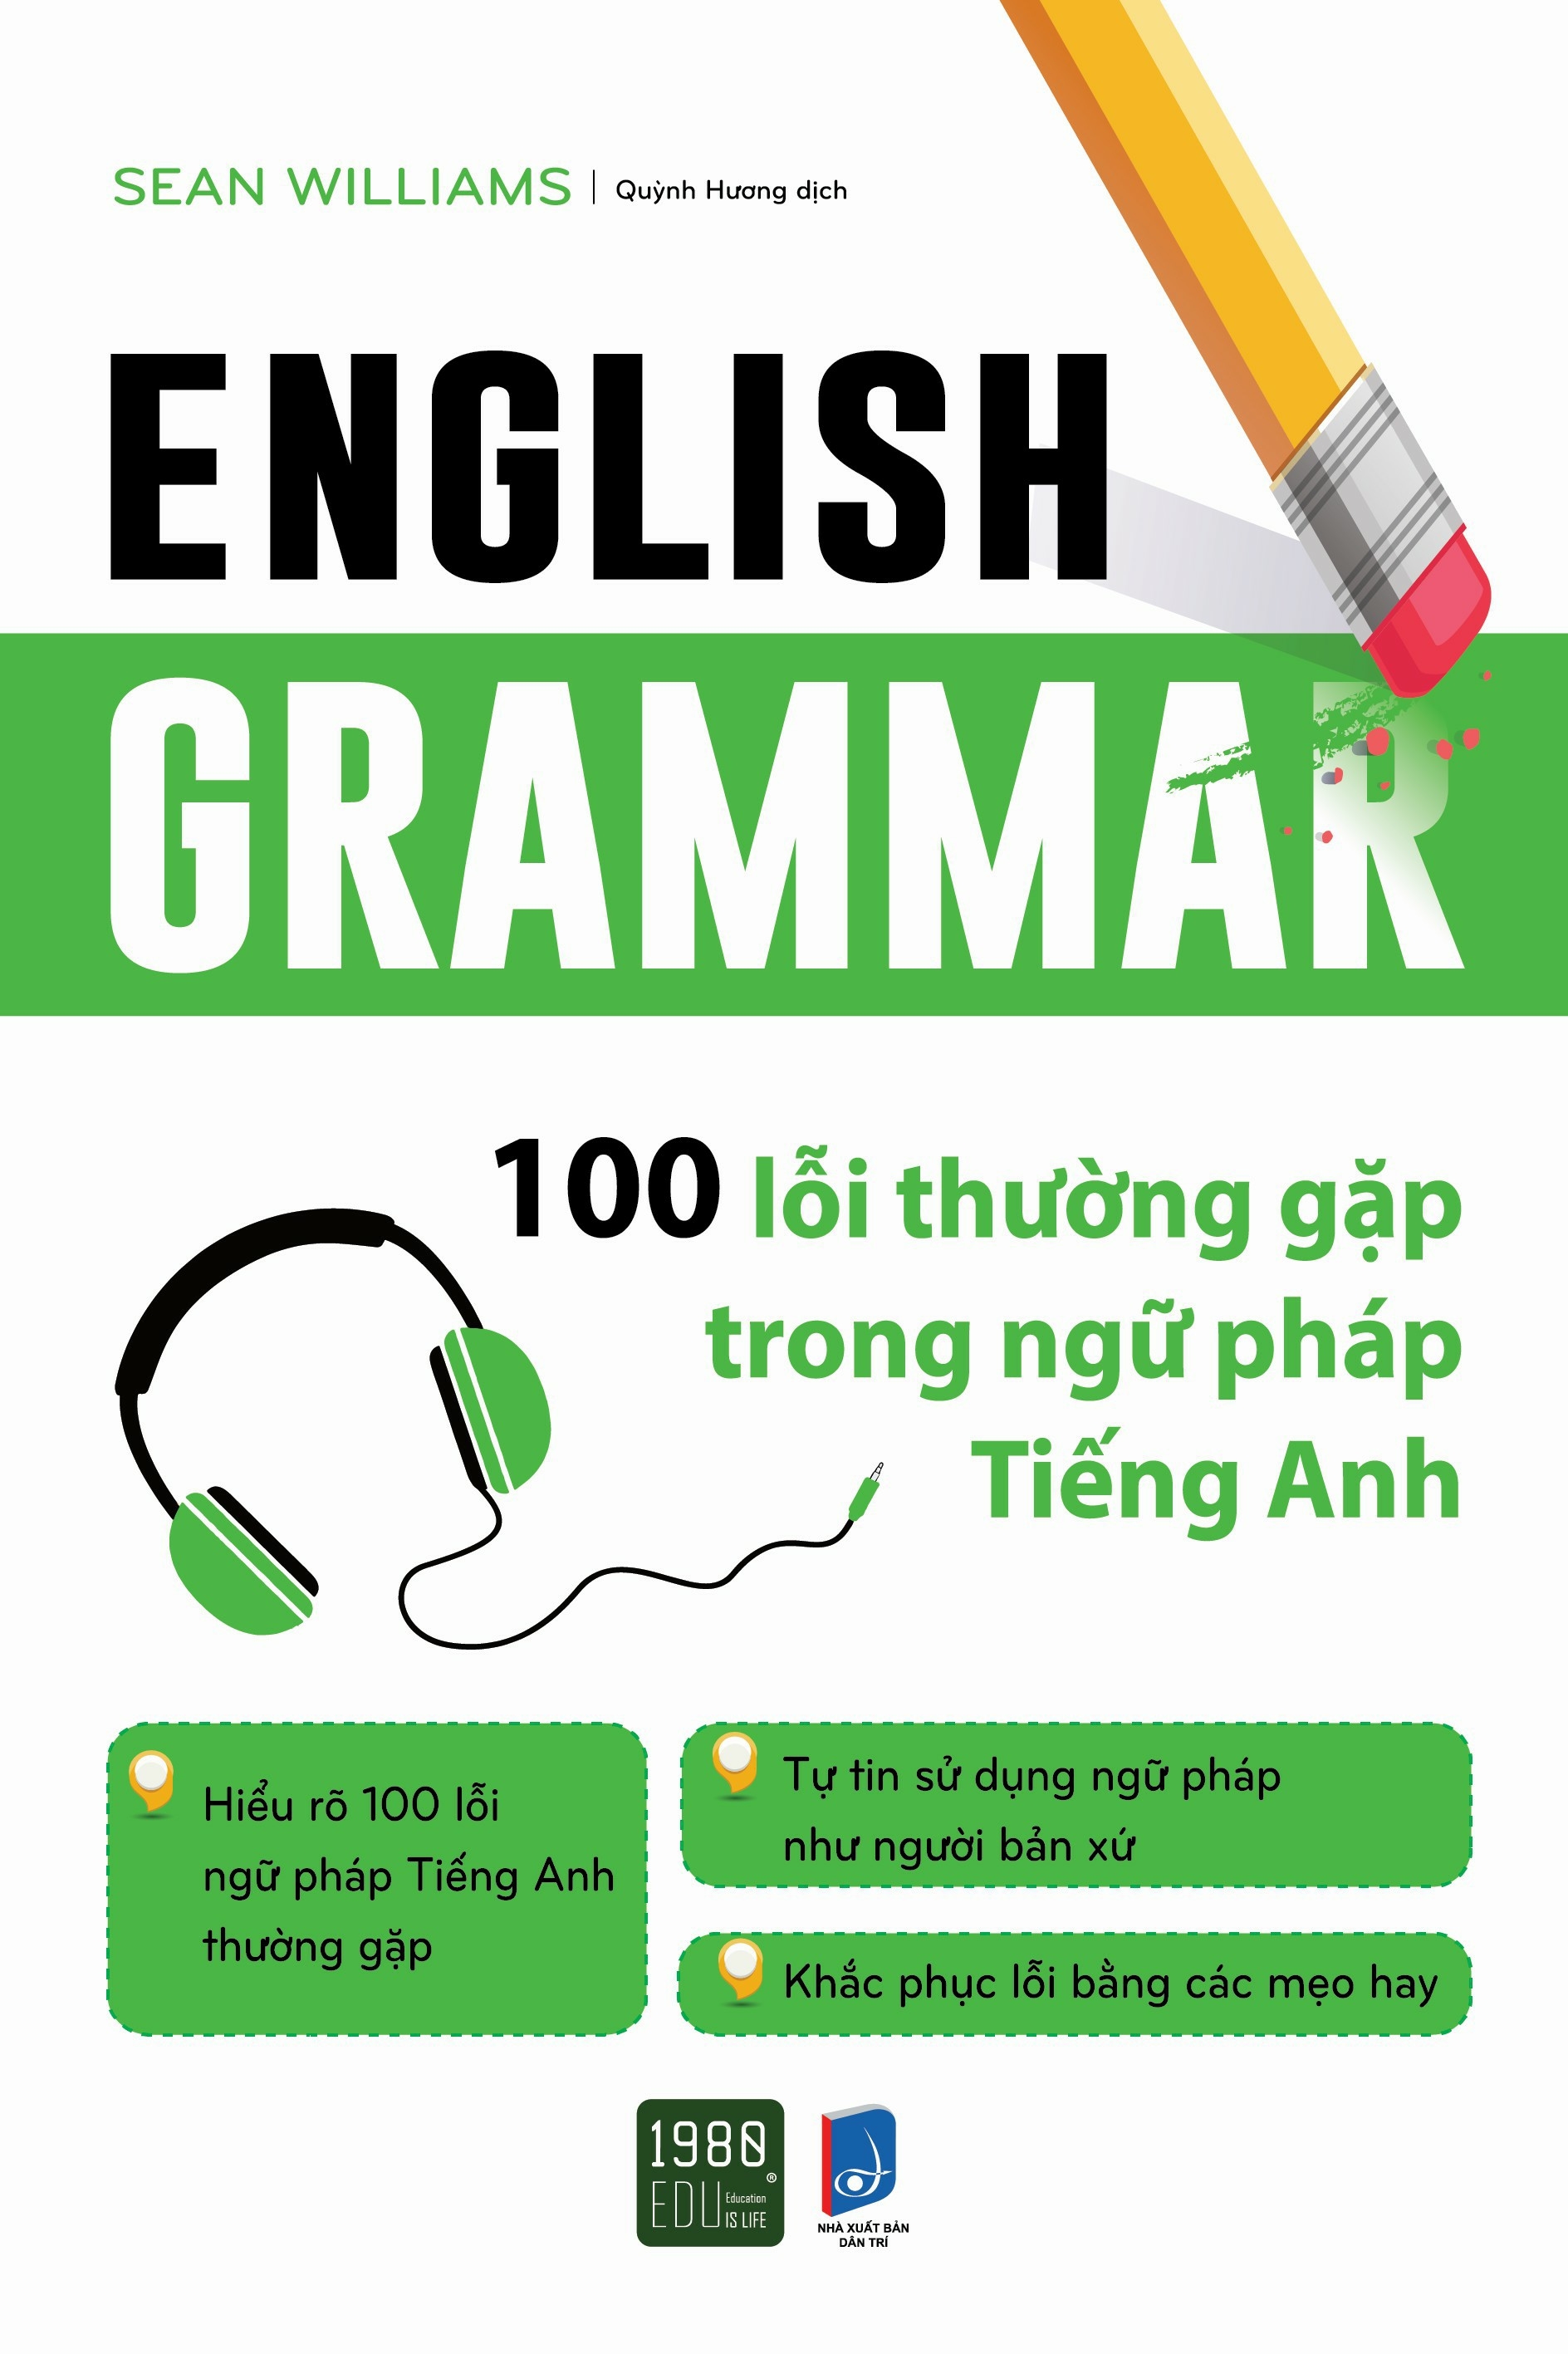 English Grammar - 100 Lỗi Thường Gặp Trong Ngữ Pháp Tiếng Anh PDF